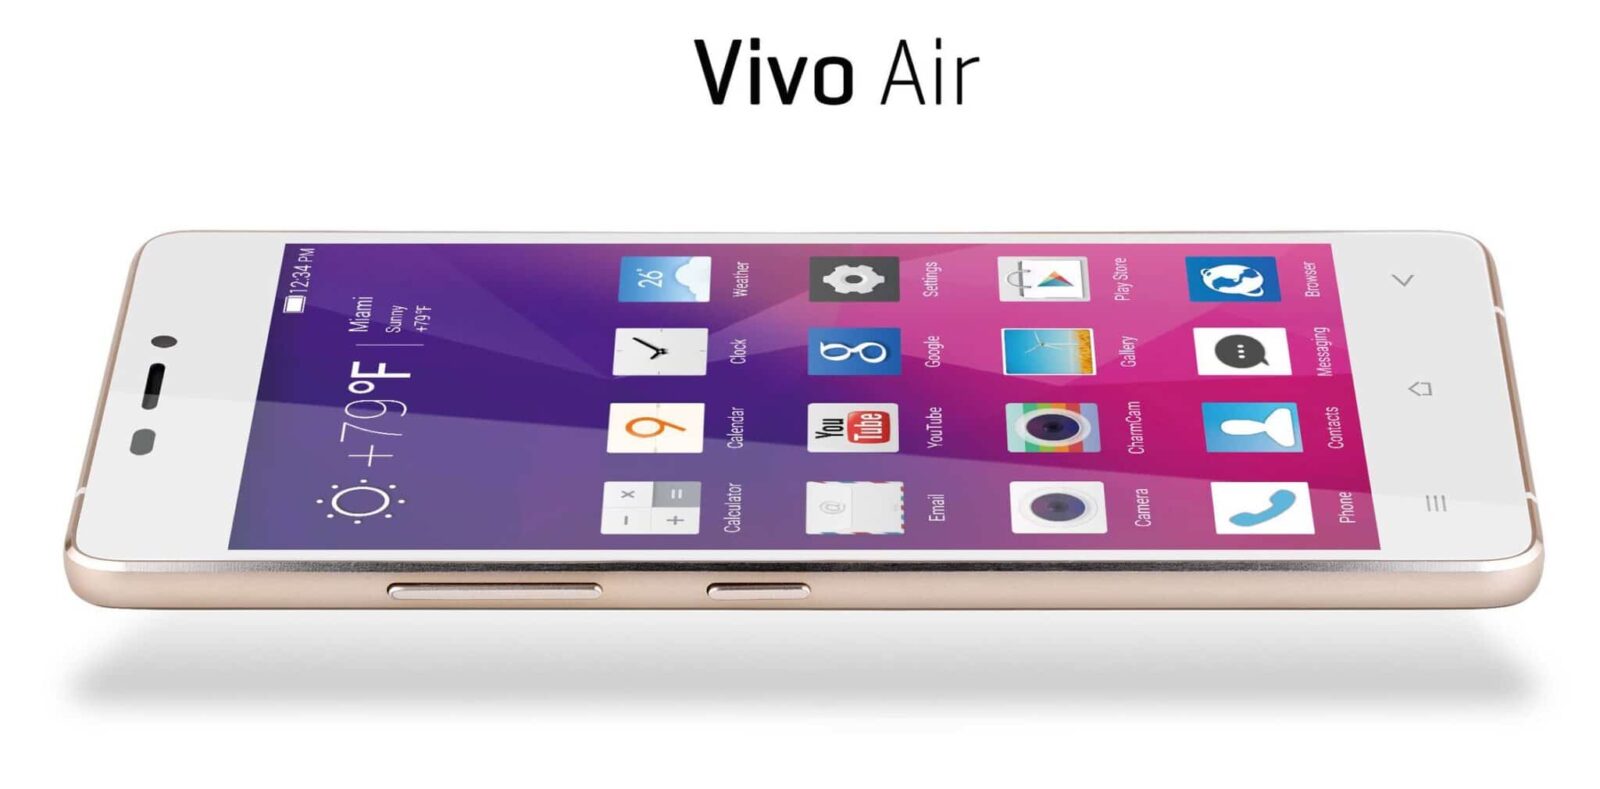 CES : Le Vivo Air, un smartphone ultra-fin à 160€ Appareils